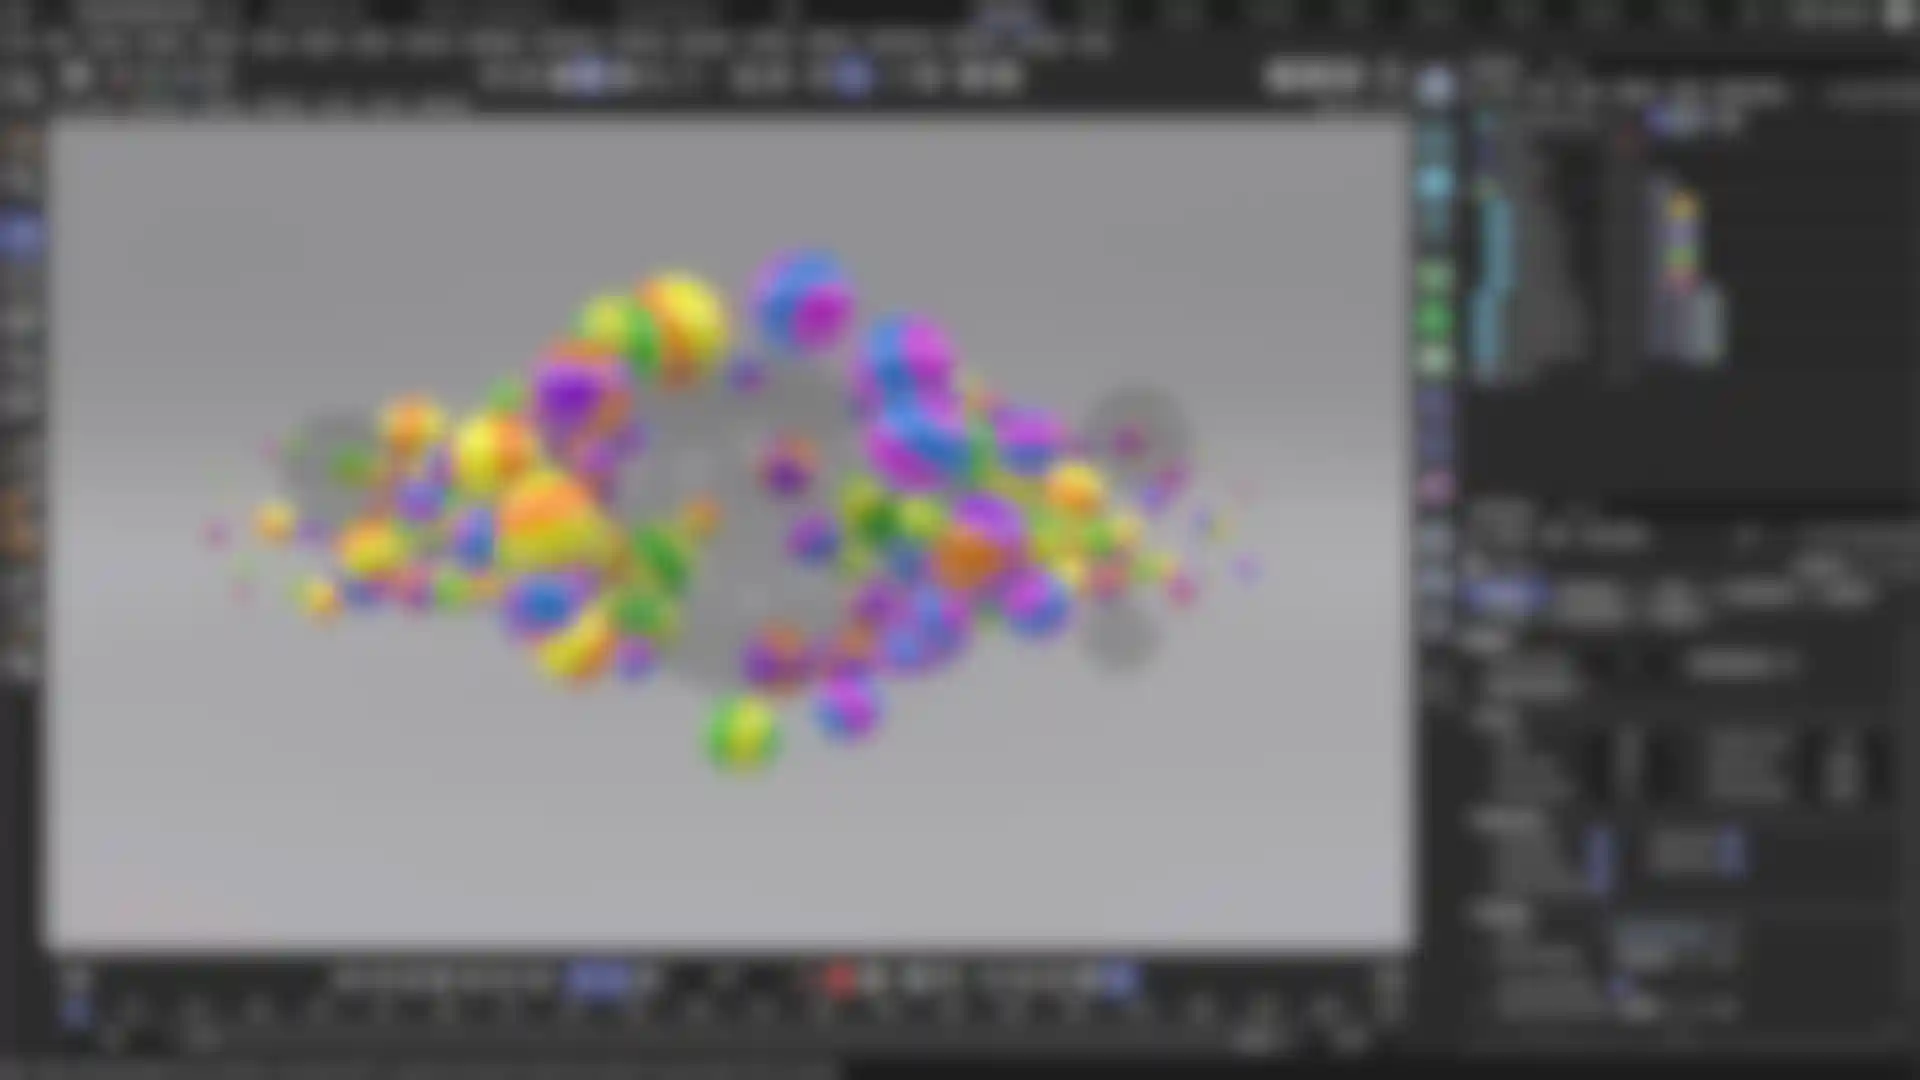 Interfaz del software de animación 3D con modelos 3D y herramientas de animación visibles.